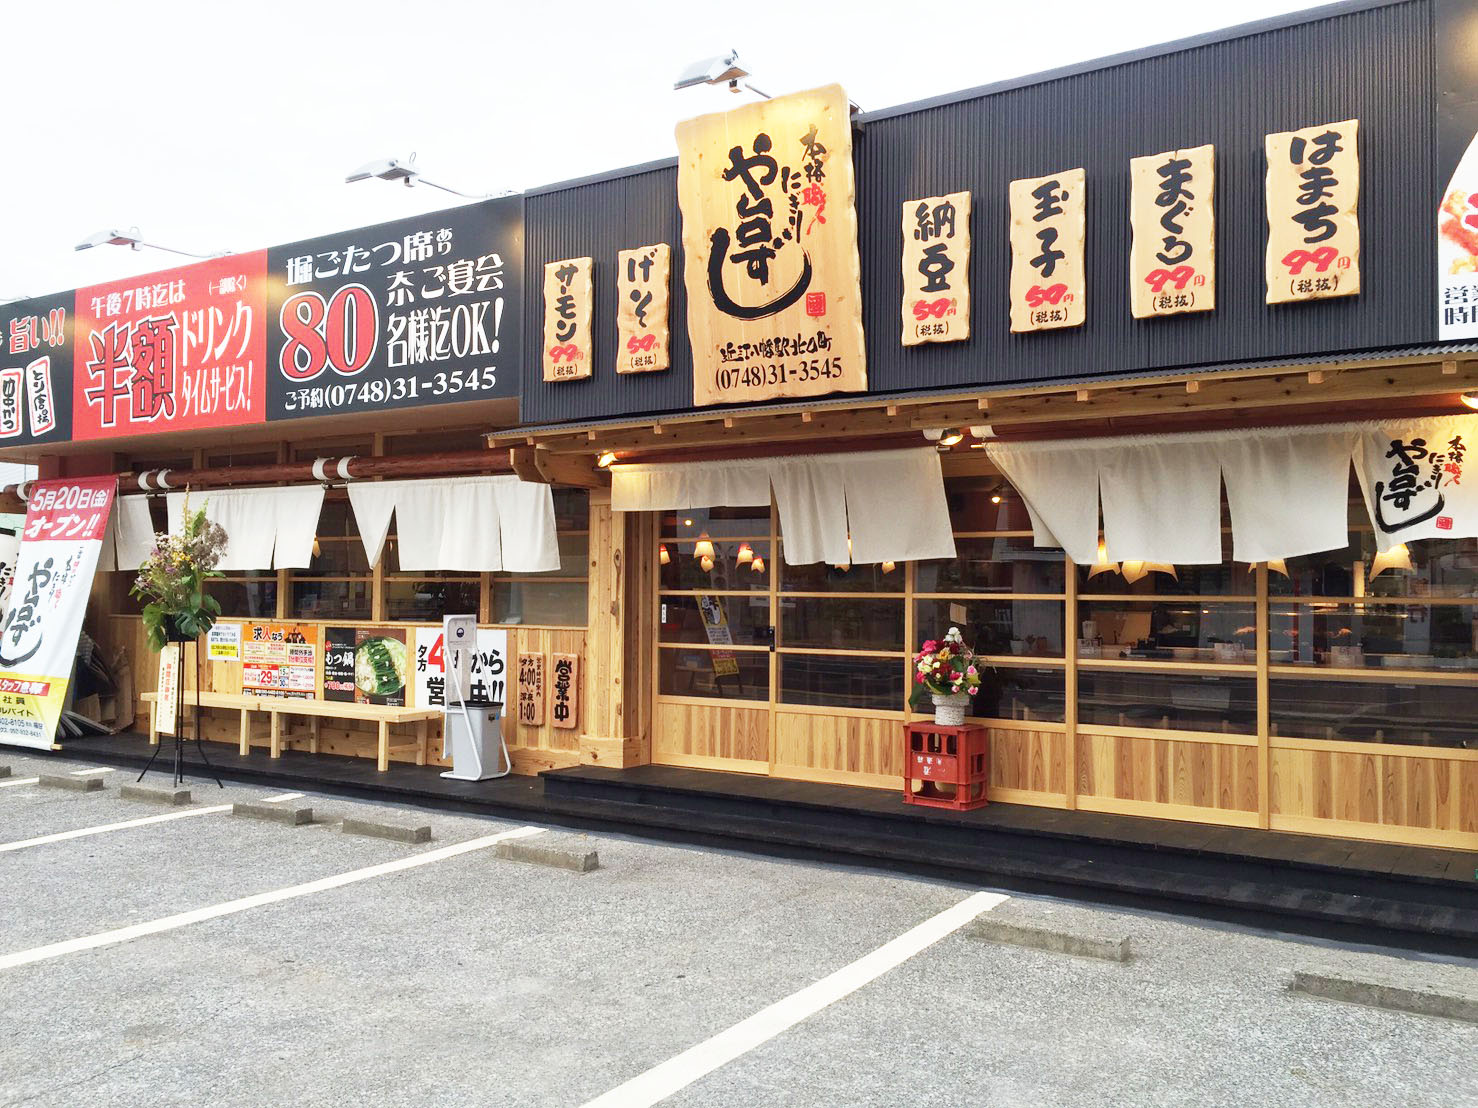 近江八幡の人気テイクアウト13選 駅前のおすすめランチやお弁当も Shiori